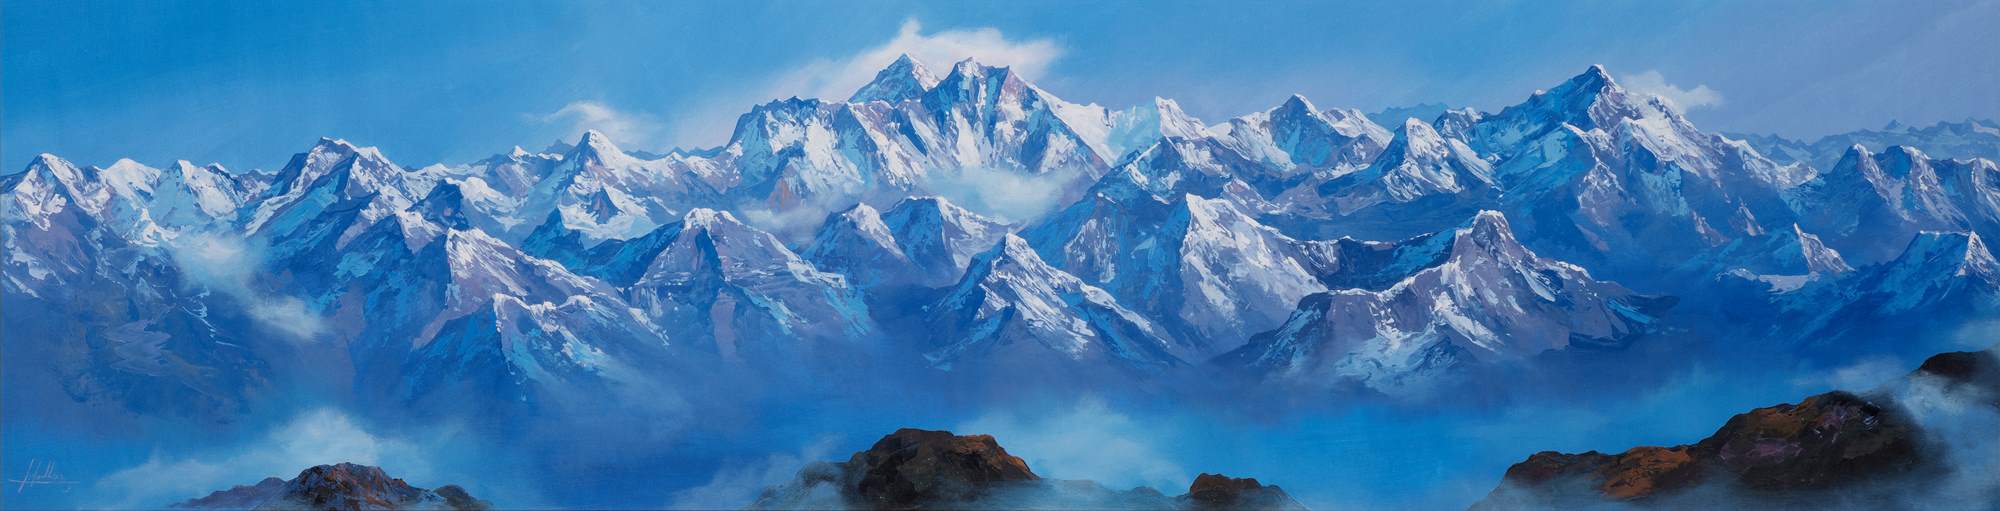 2019 국립산악박물관 기획전‘Oh! Blessed Himalaya-네팔 화가들의 기록’ 이미지2